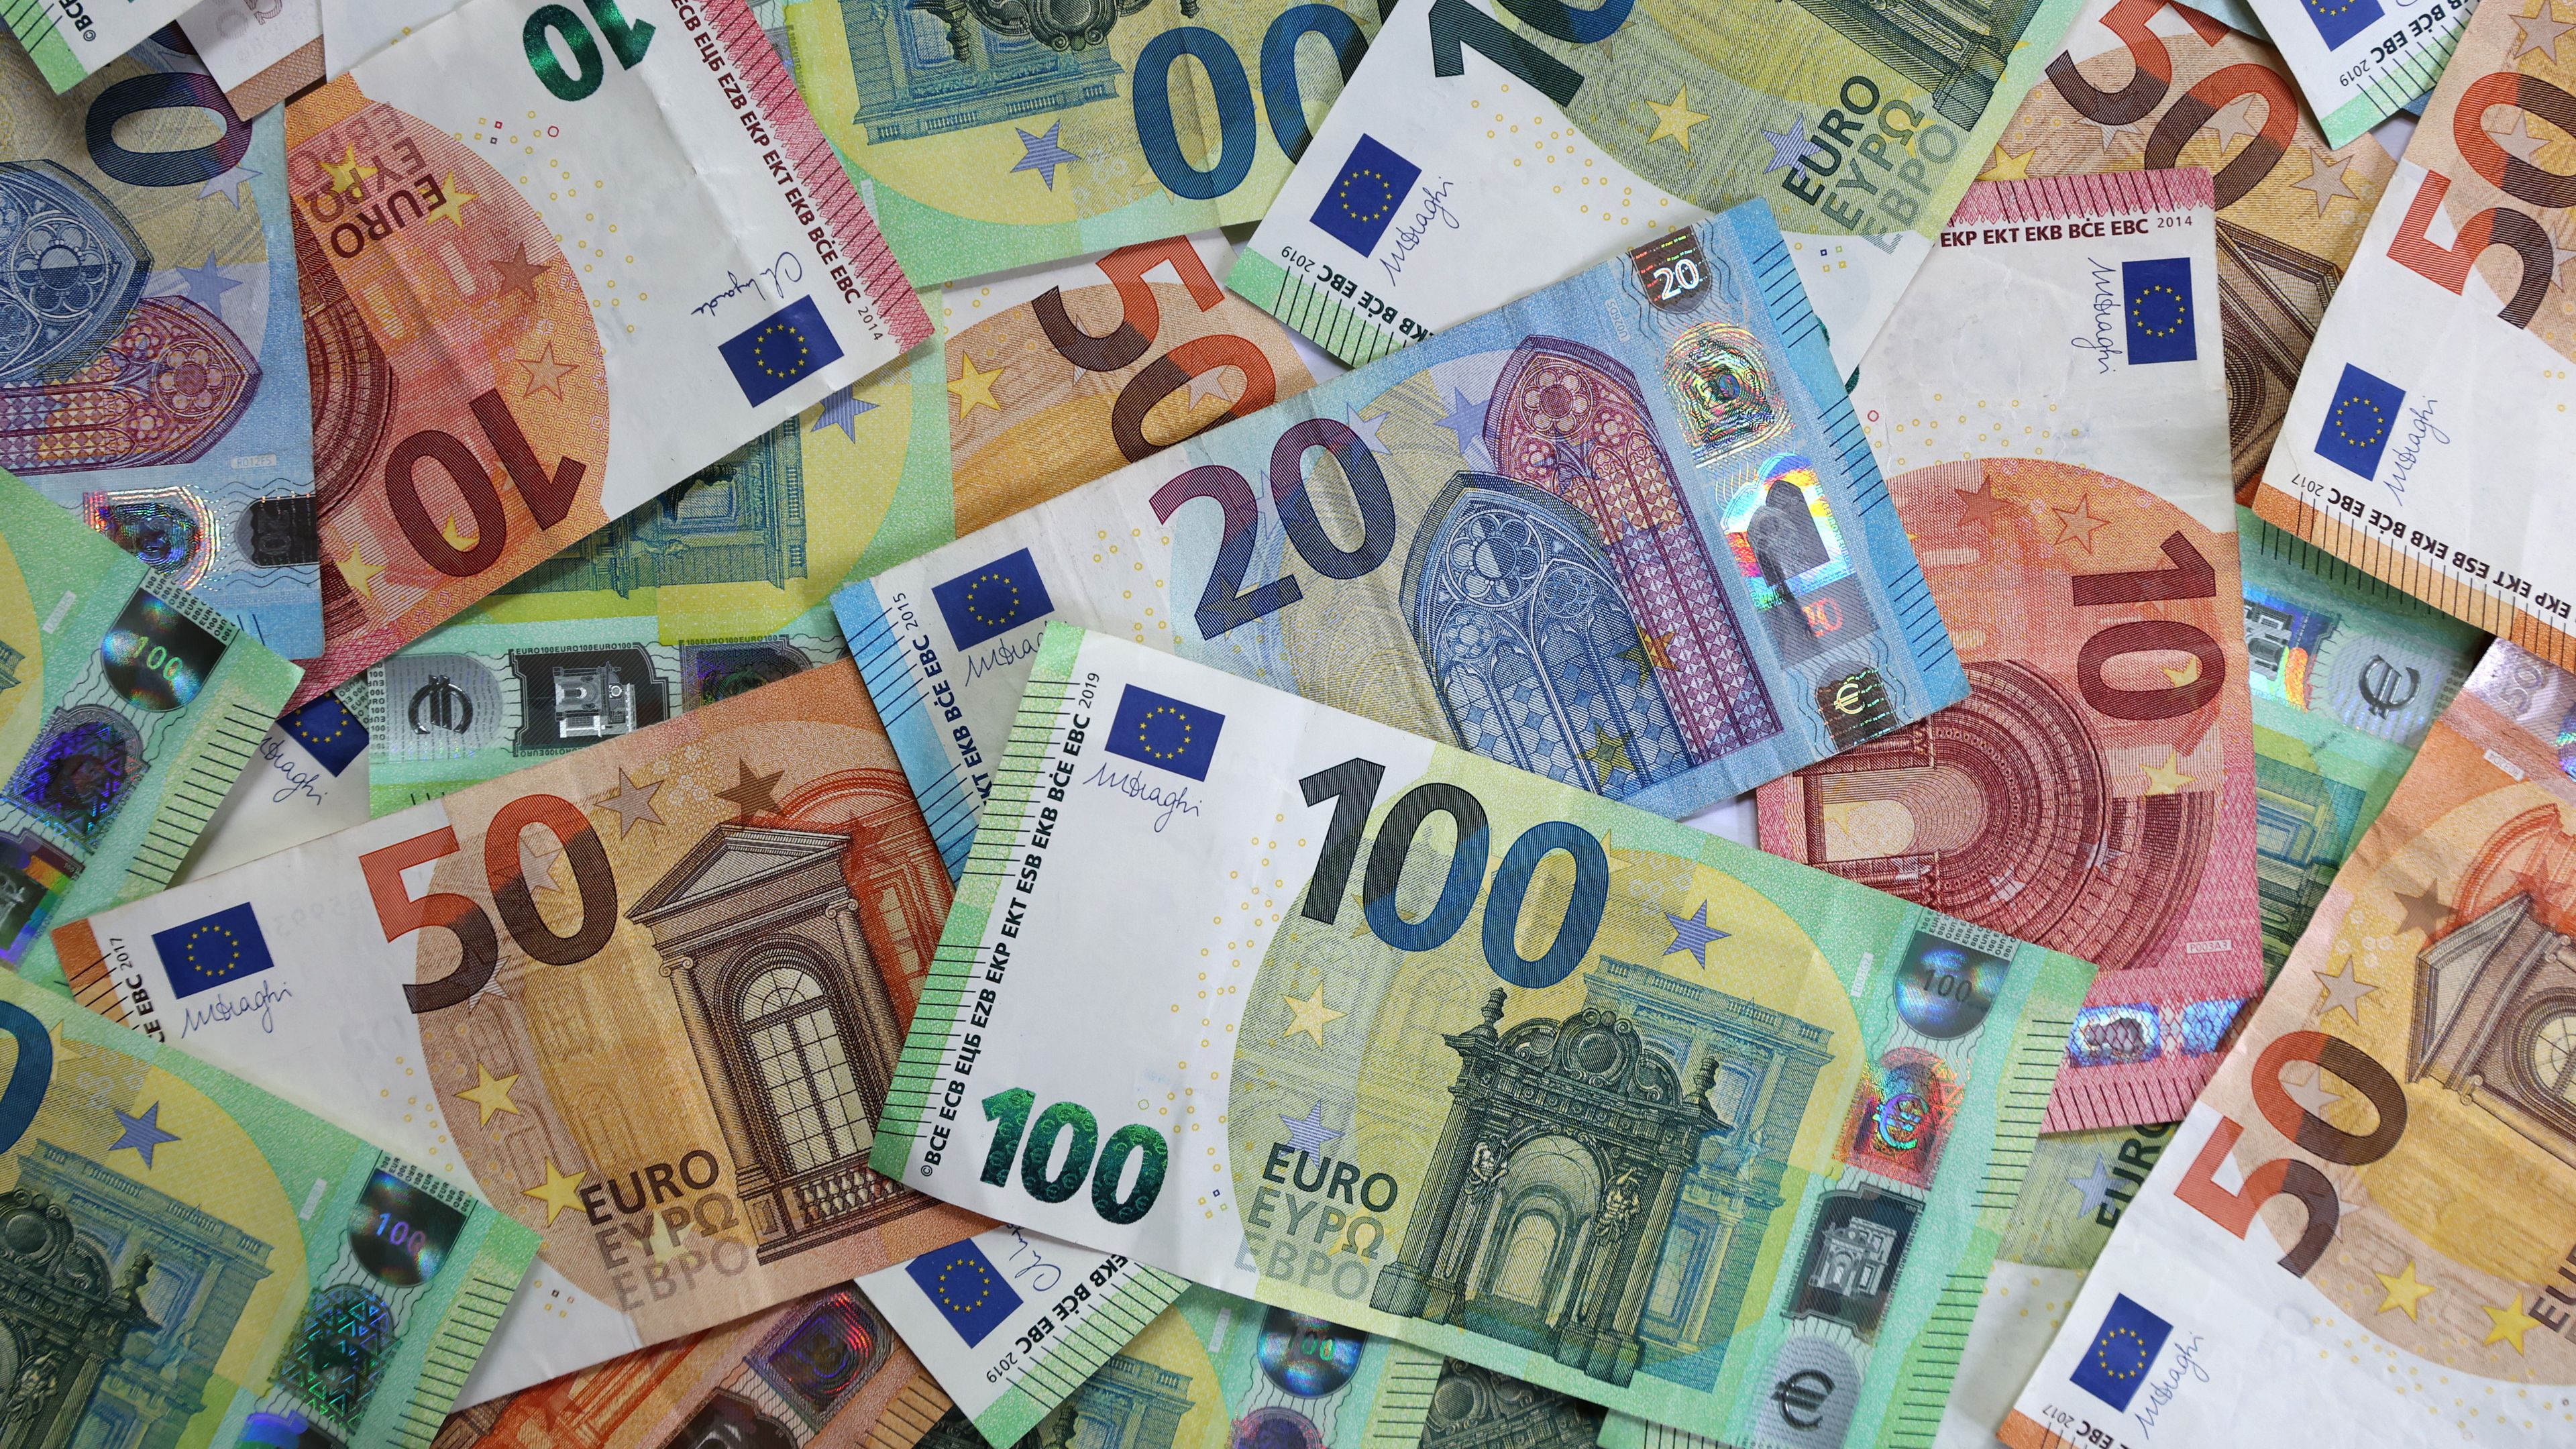 200 ezer euró még egy nagy kiadónak sem aprópénz…